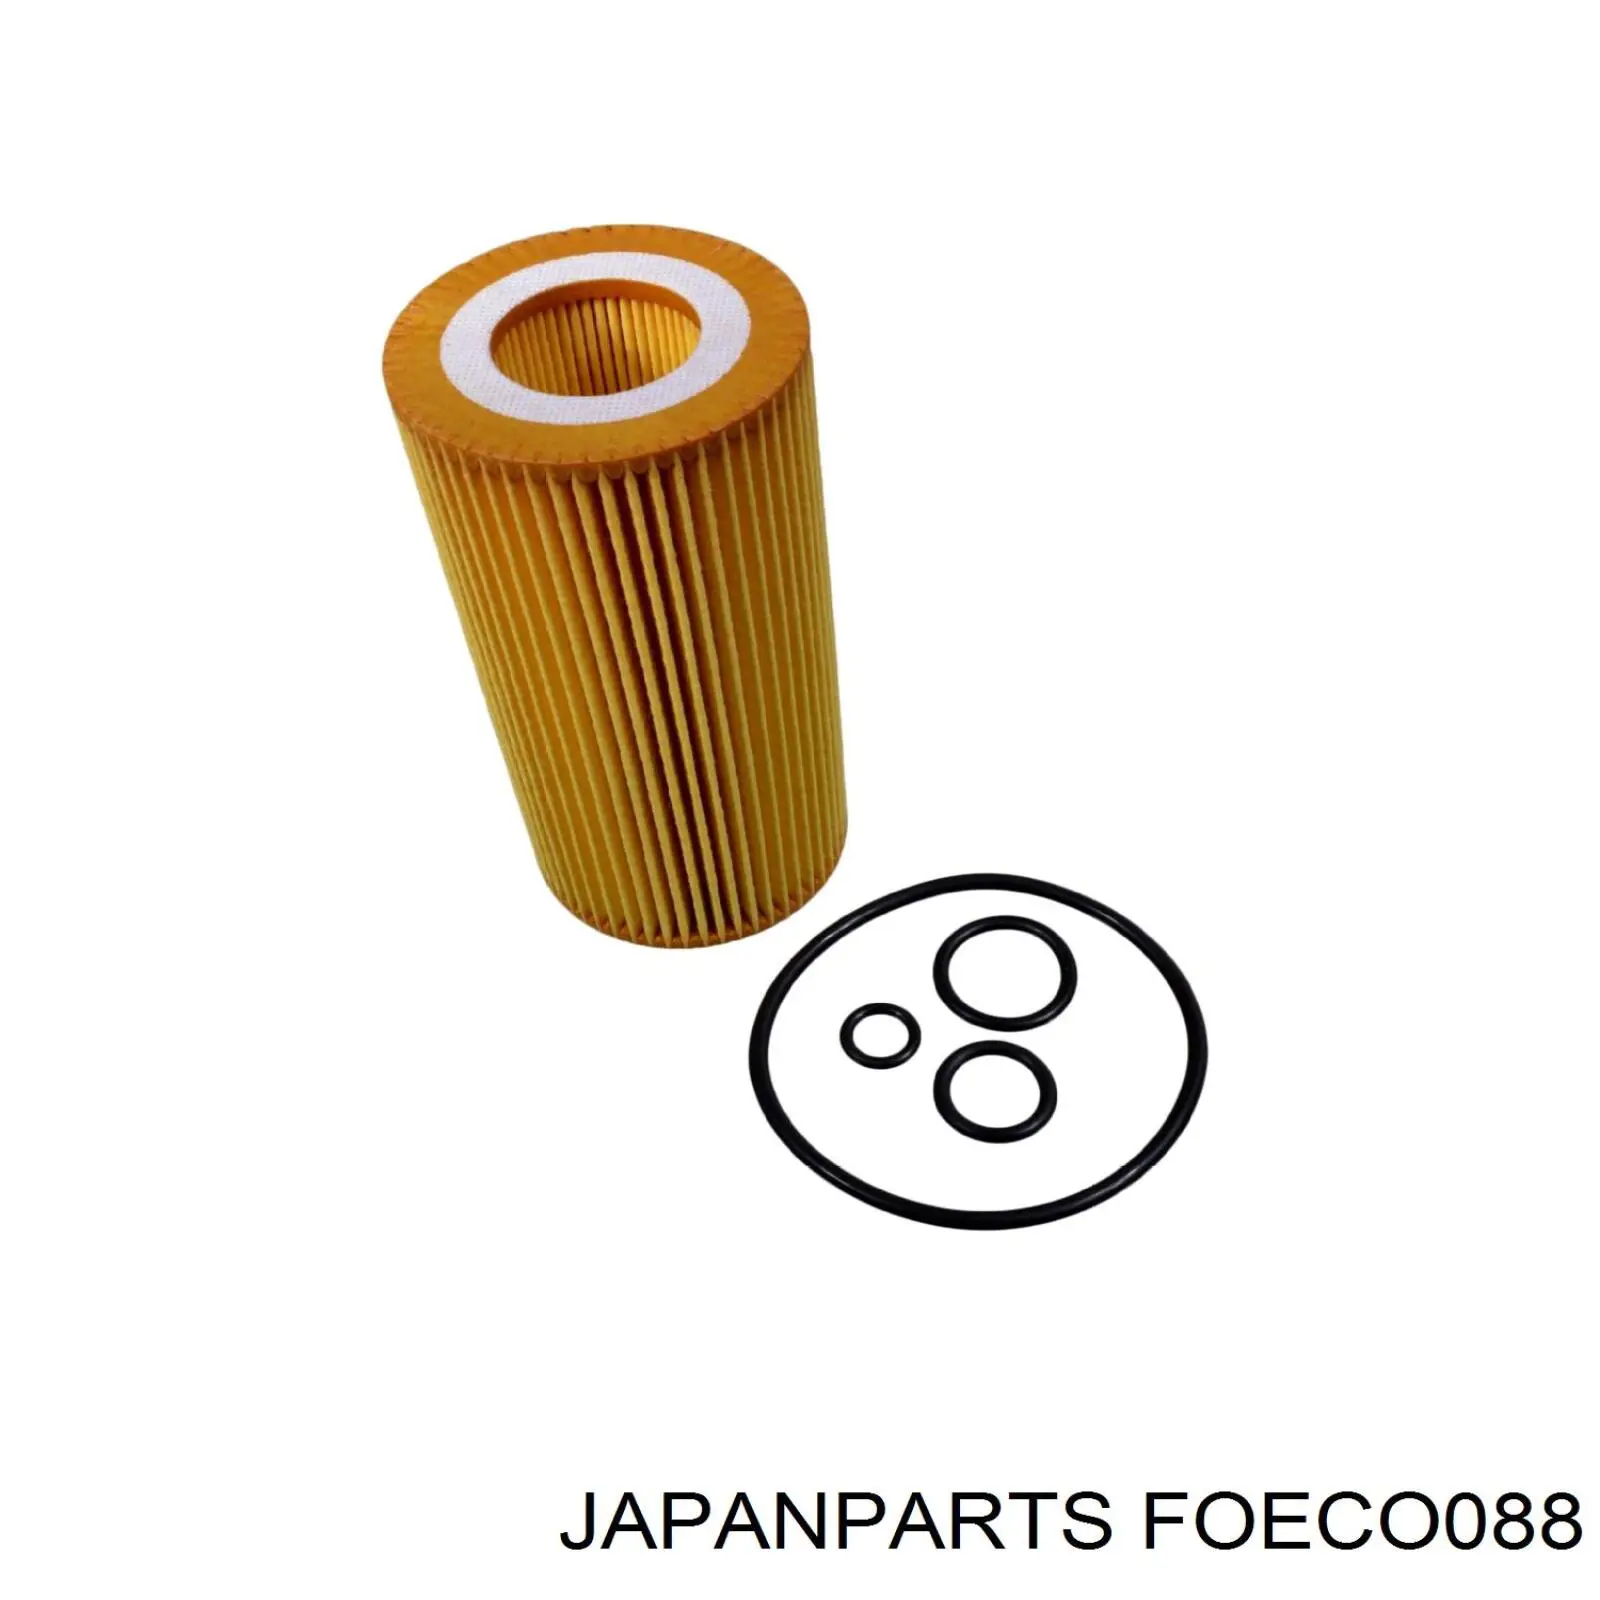 FO-ECO088 Japan Parts filtro de aceite